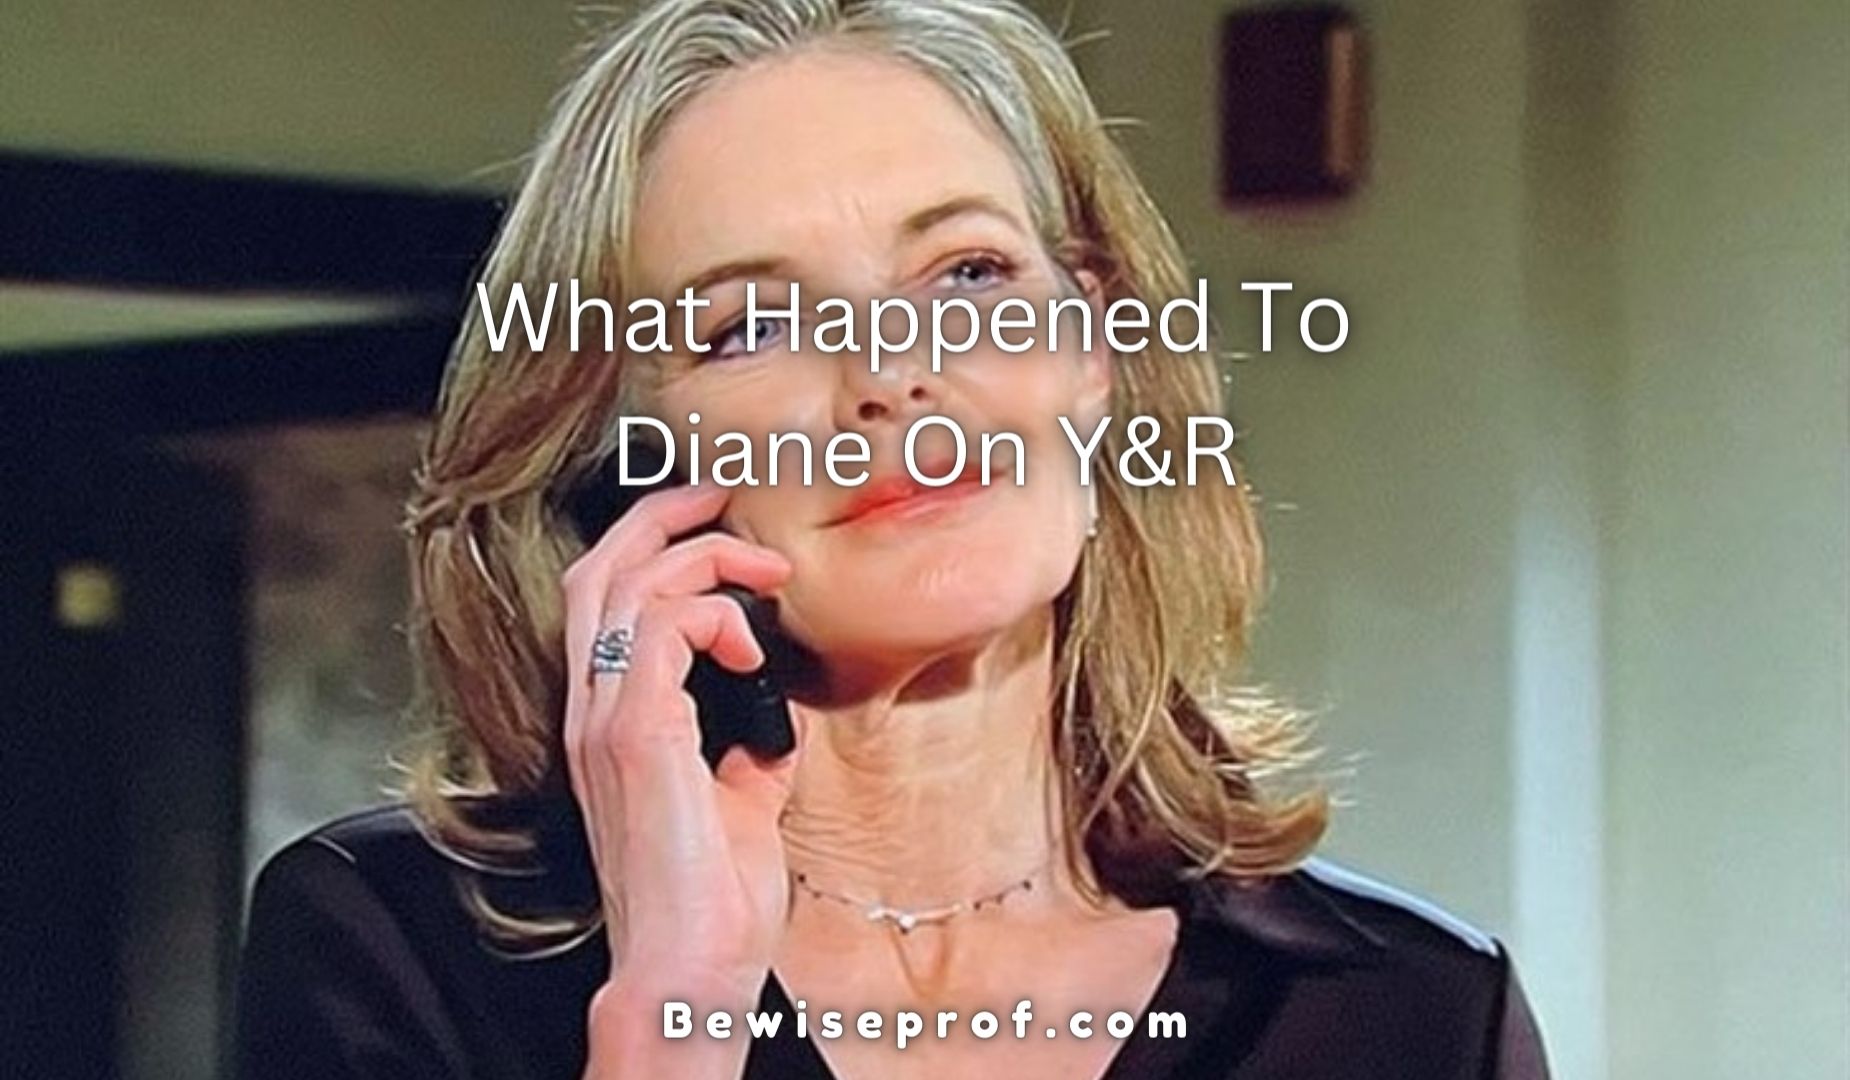 Apa yang Terjadi Pada Diane Di Y&R